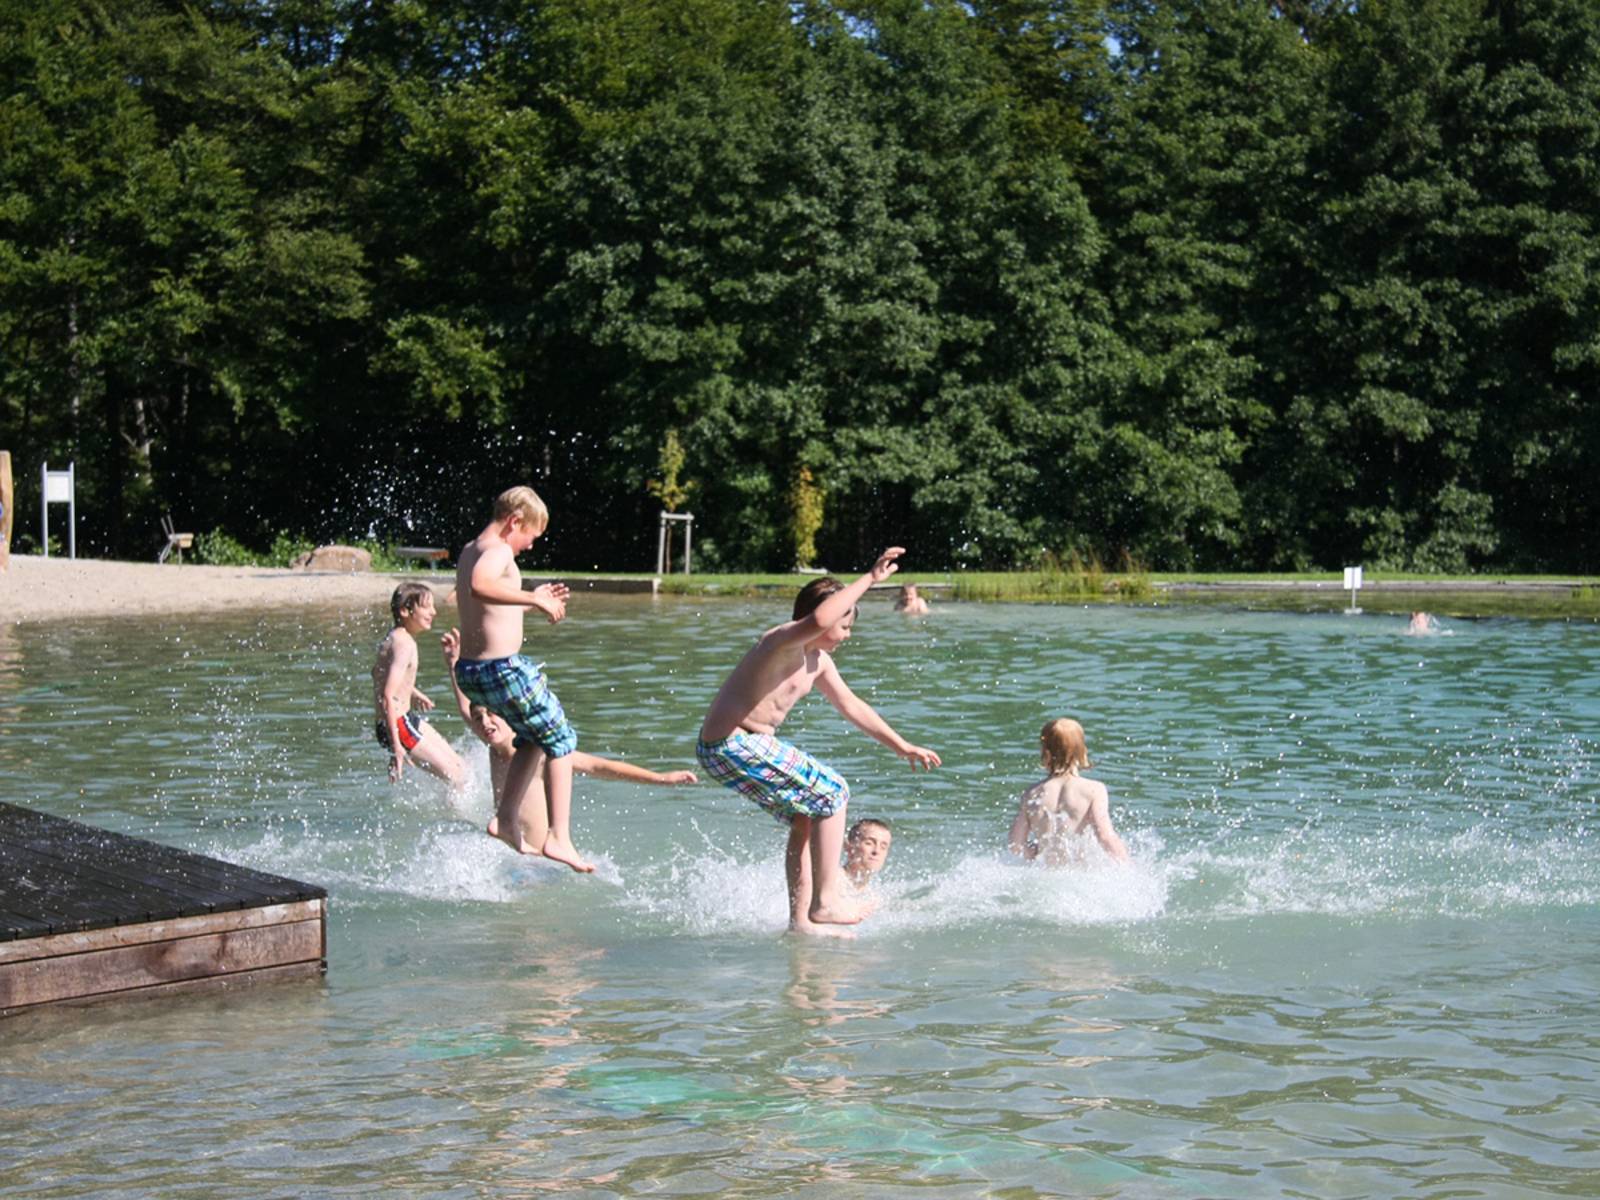 Jugendliche springen mit Anlauf in einen See